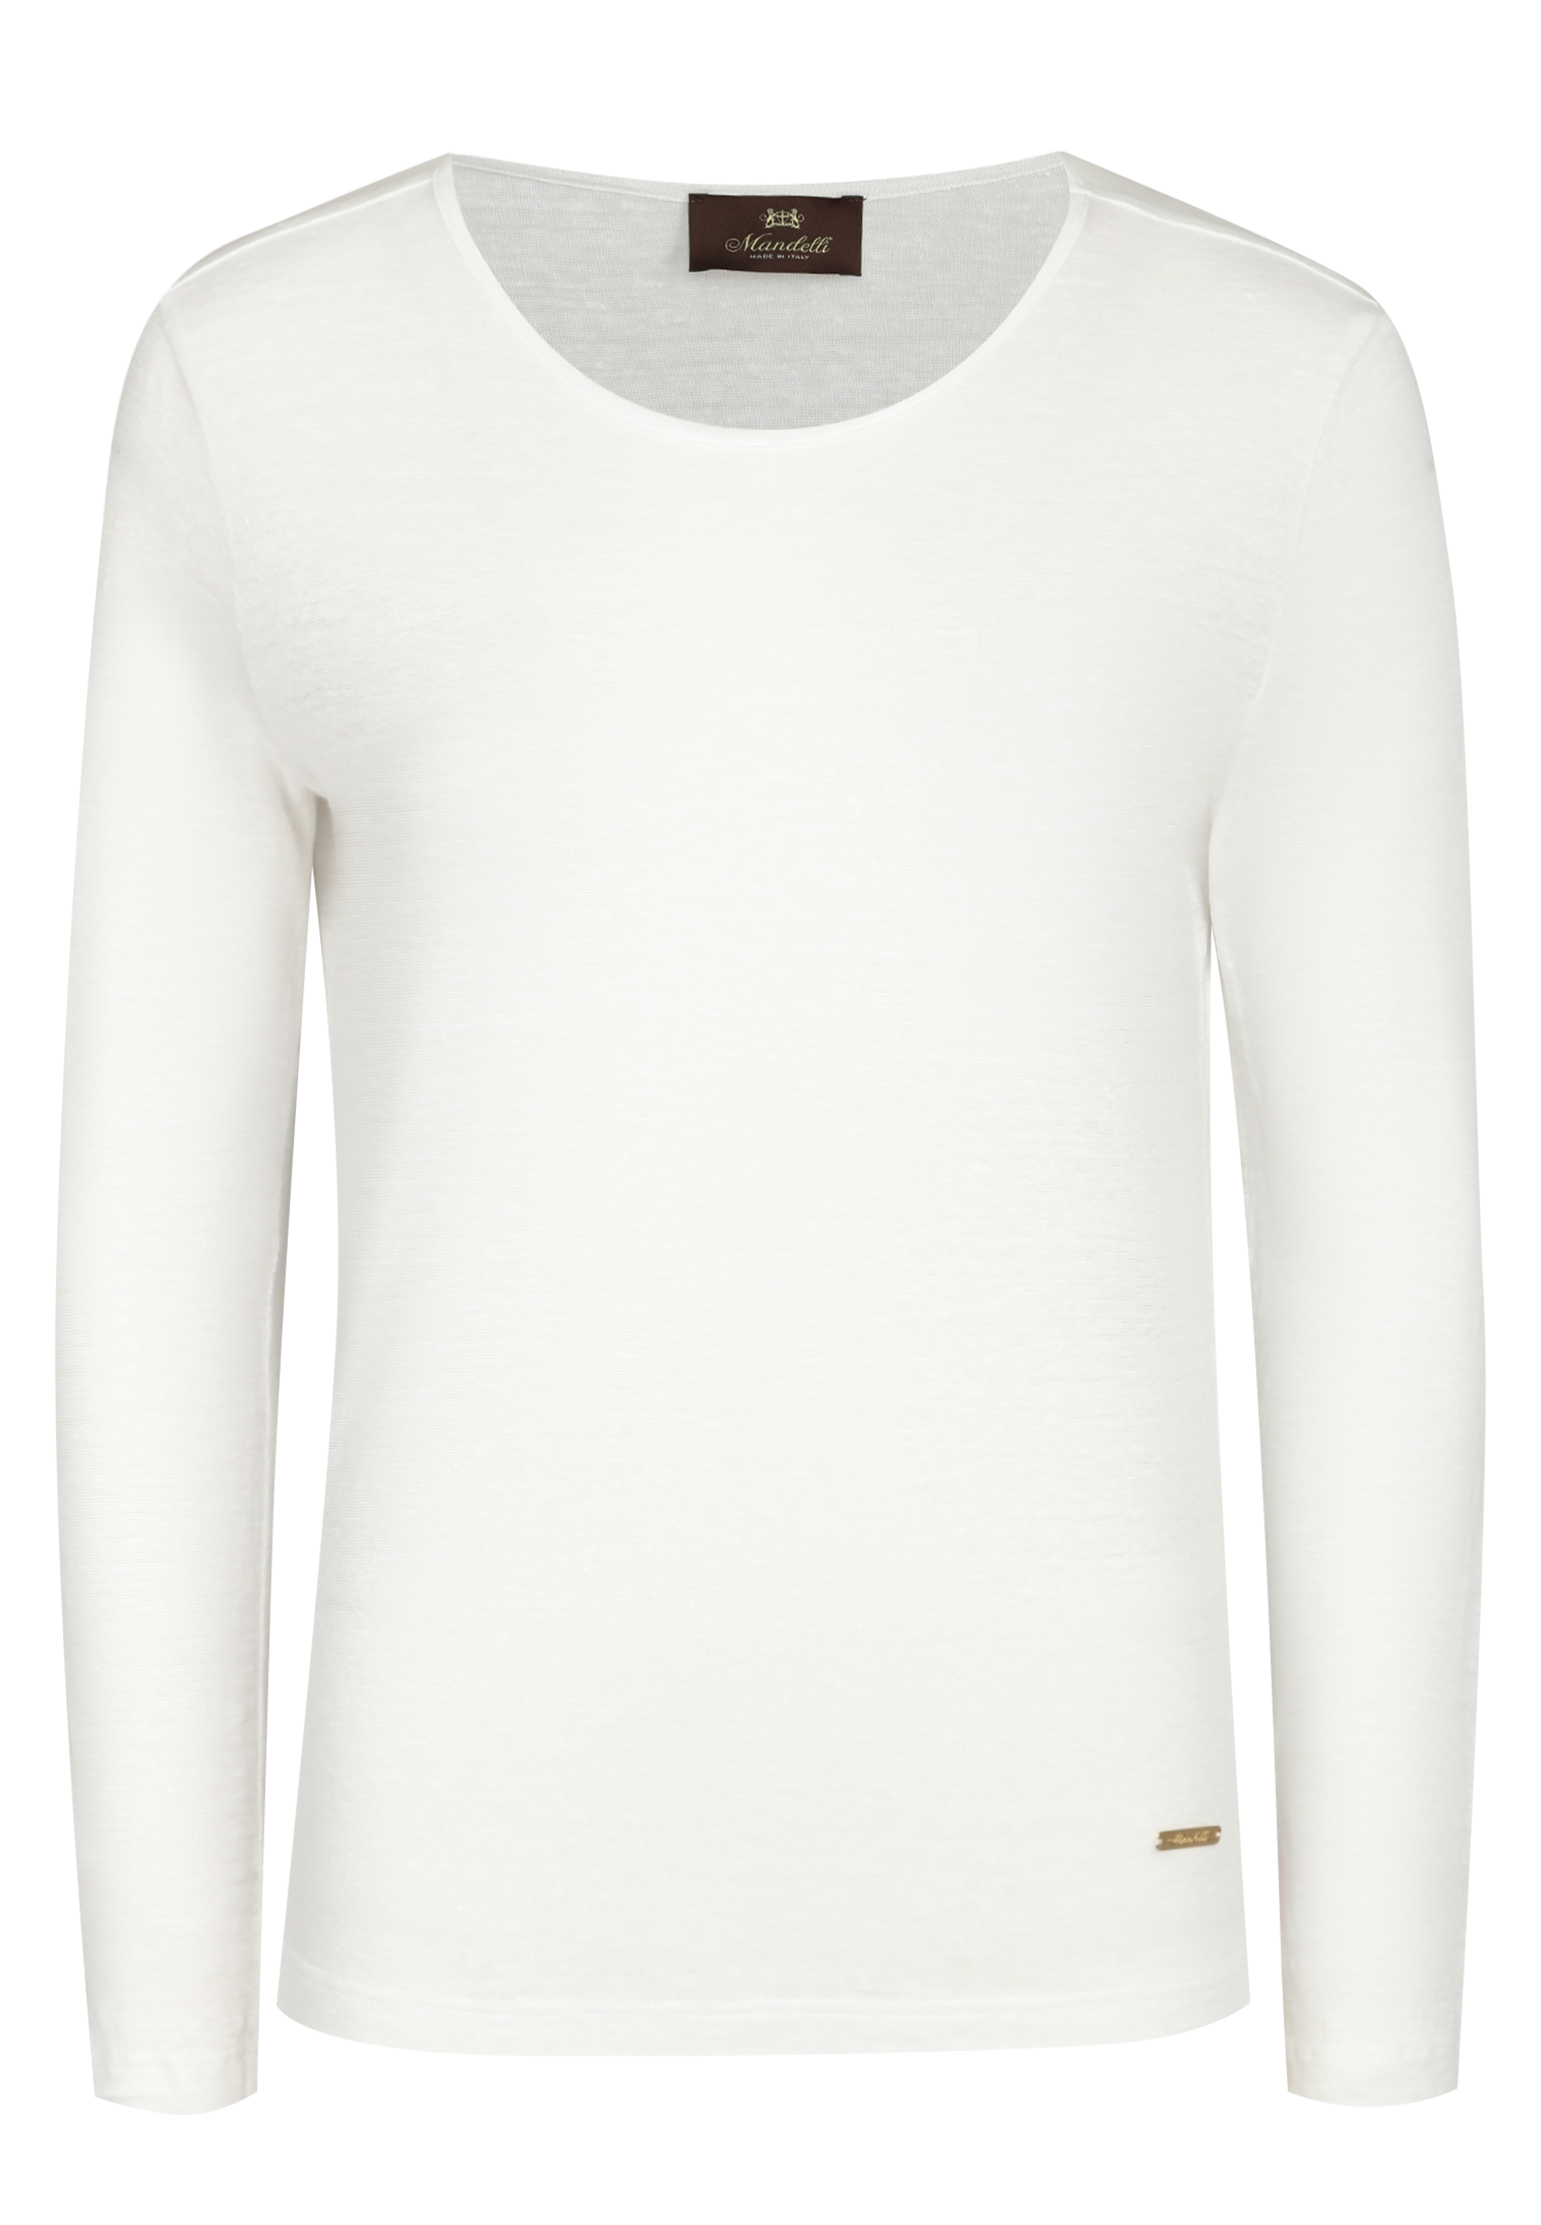 Пуловер MANDELLI Белый, размер 40 161036 - фото 1